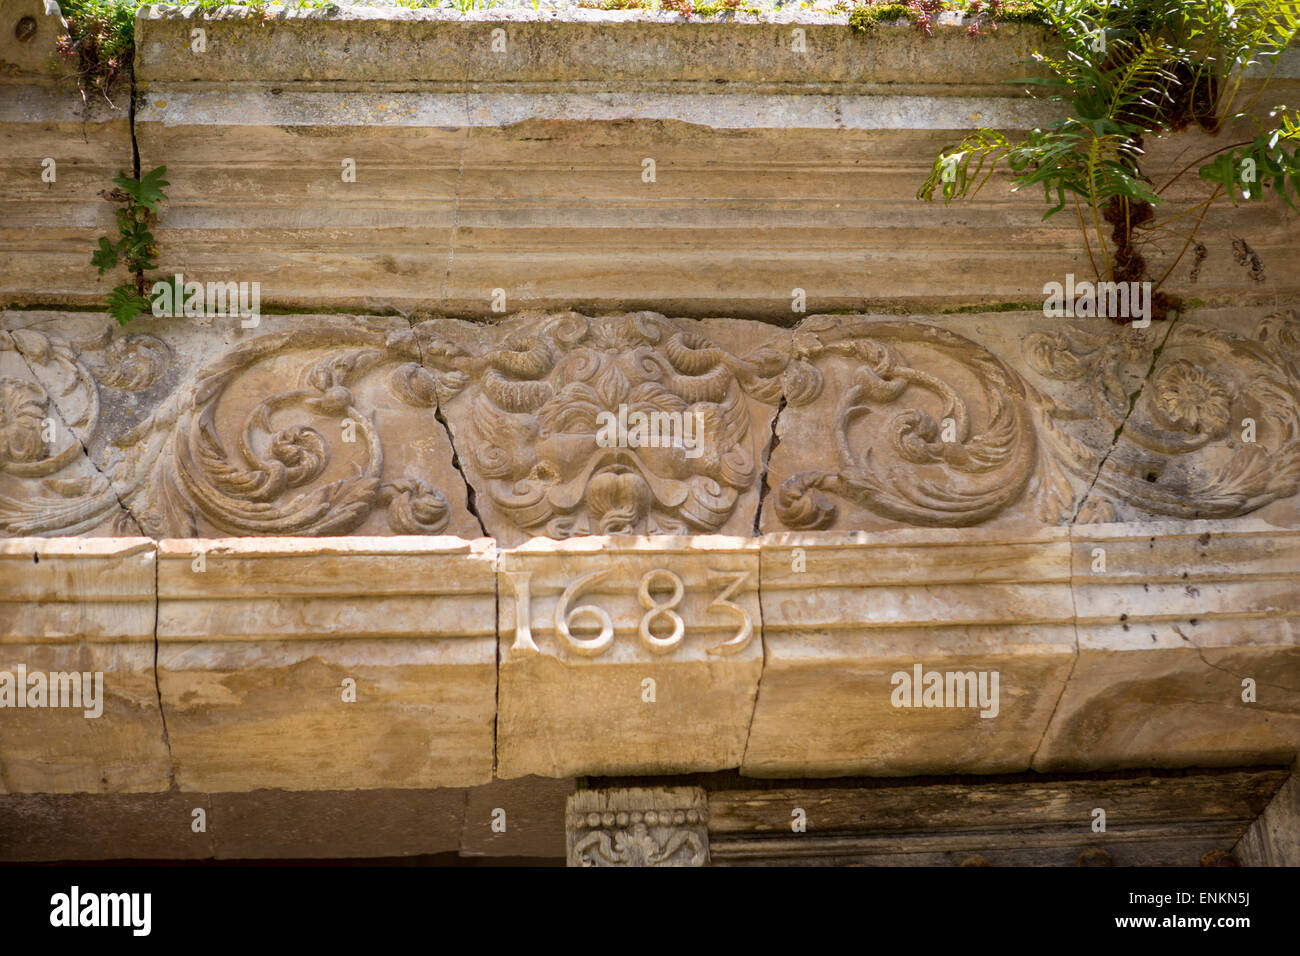 Ornement avec la date 1683 au-dessus d'une porte au château de Bruniquel, Tarn et Garonne, Midi-Pyrénées, France Banque D'Images